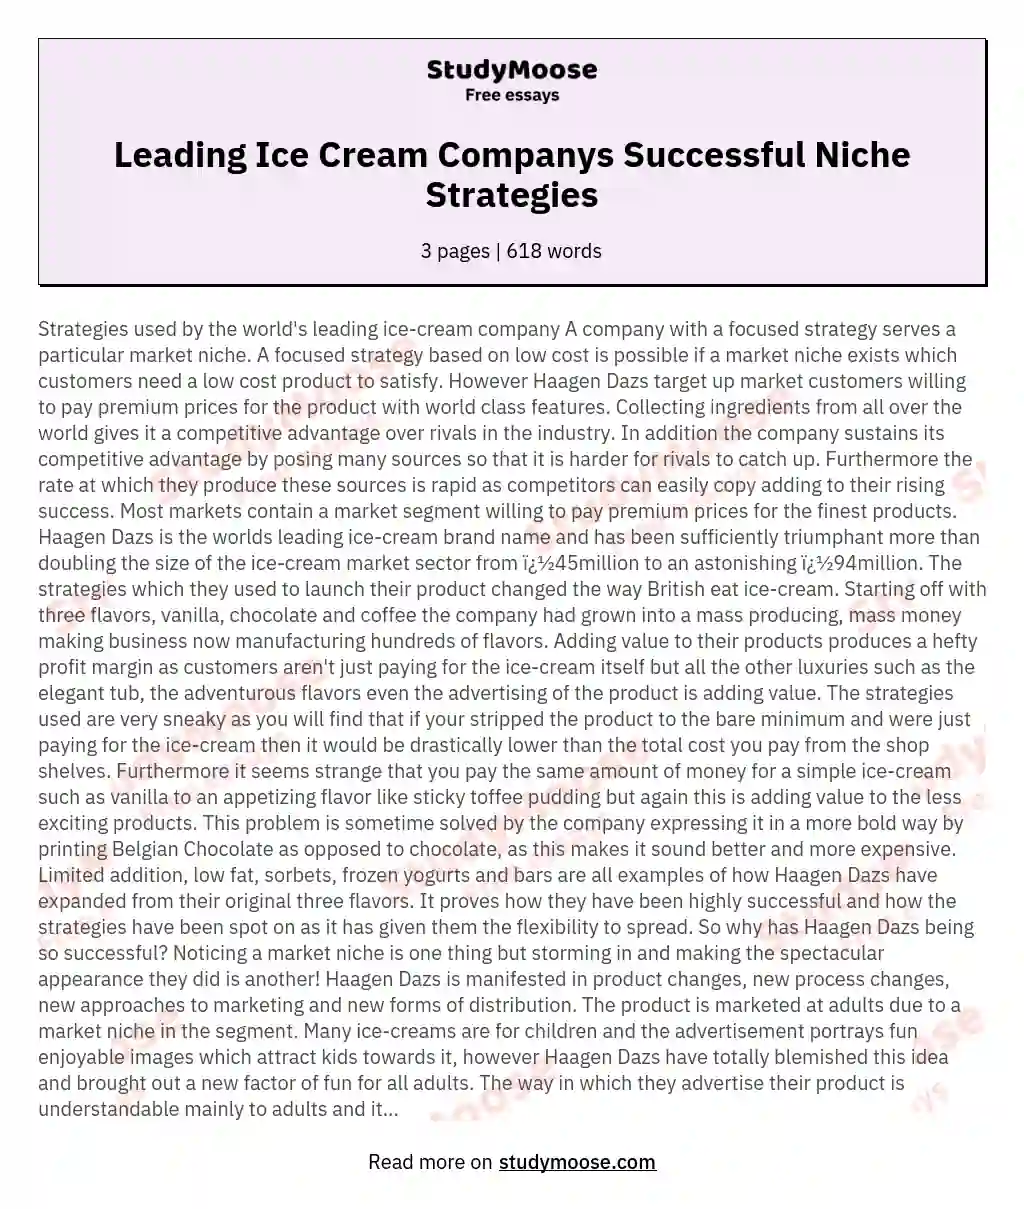 Leading Ice Cream Companys Successful Niche Strategies